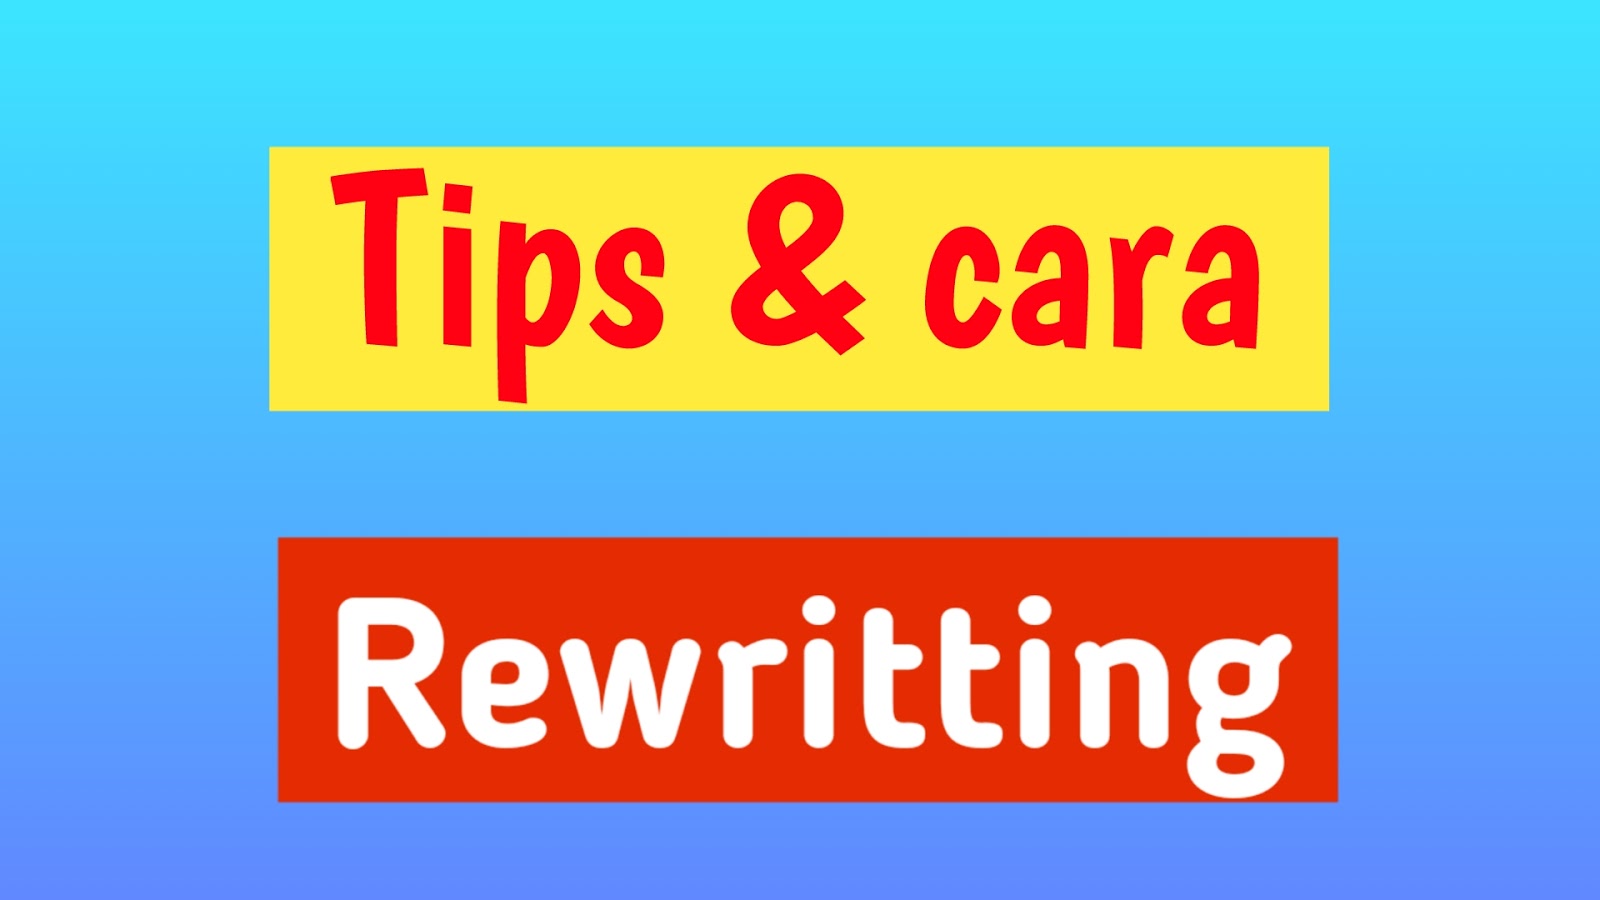  Rewrite artikel ialah acara menulis ulang artikel sebelumnya yang sudah ada Cara menciptakan Artikel Rewrite yang baik dan benar